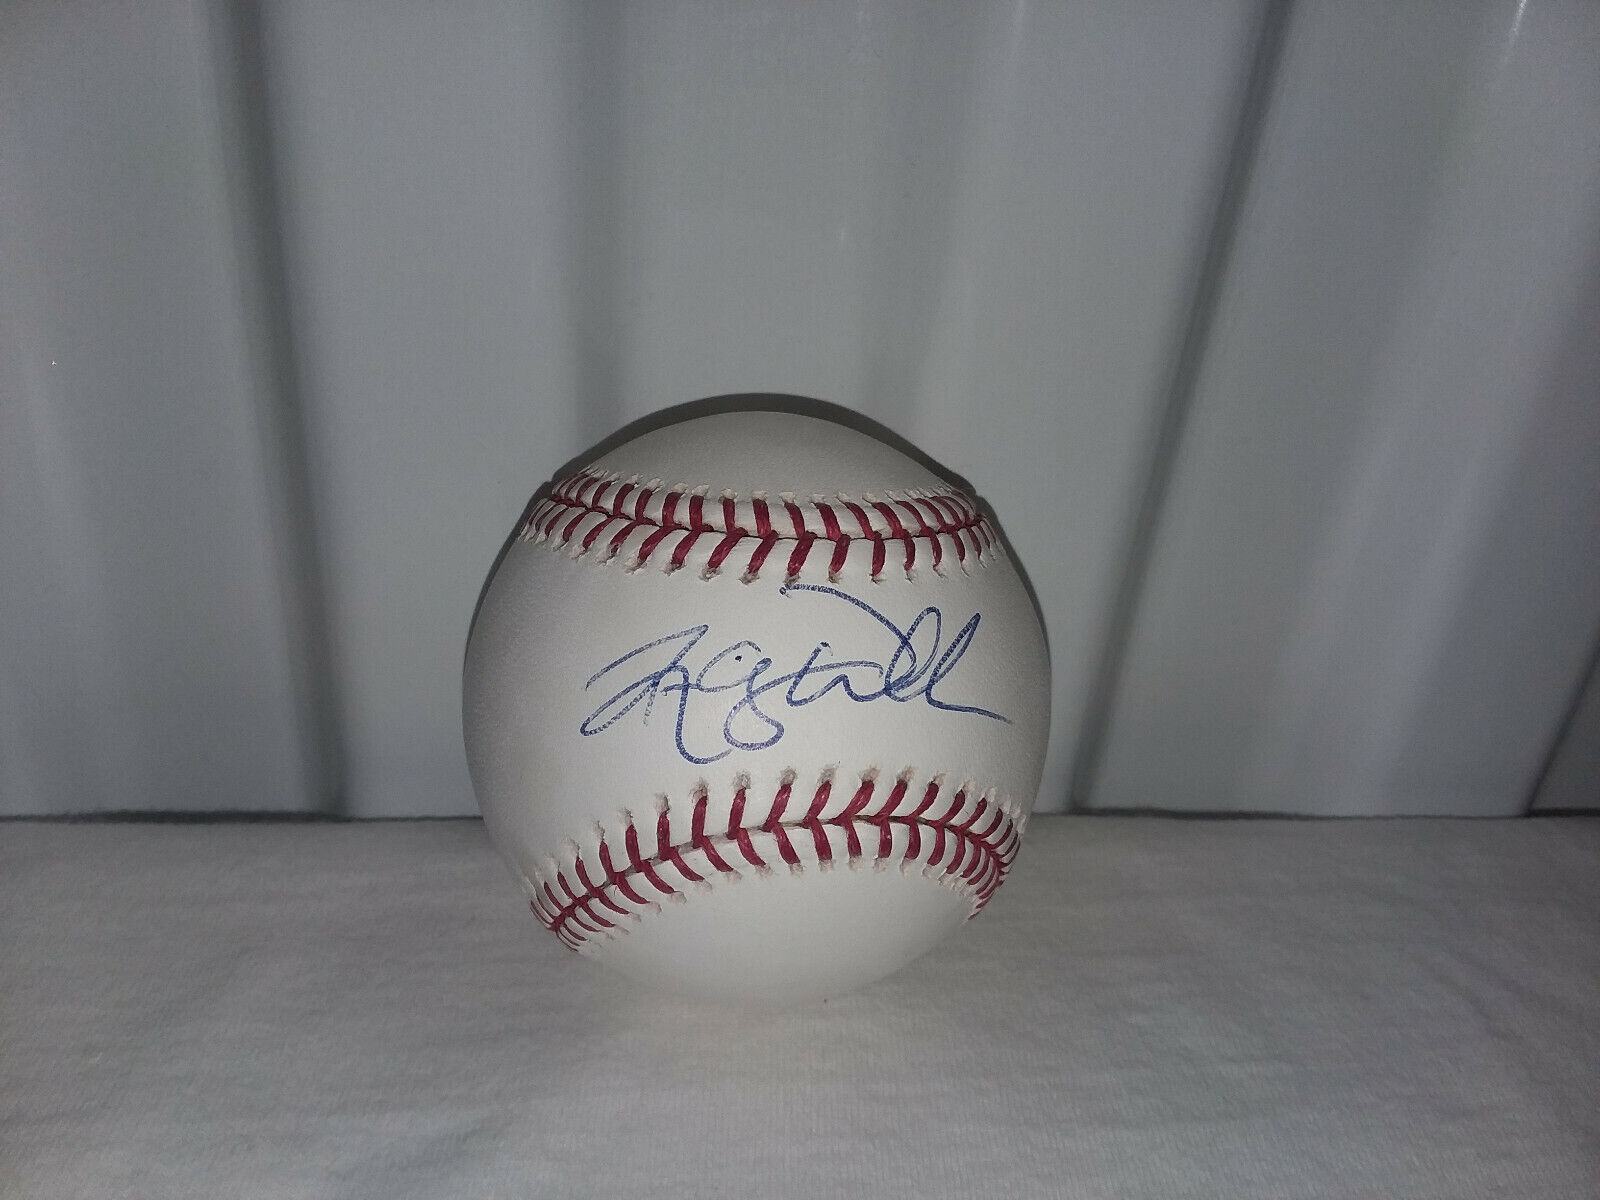 Randy Wells Autographed Rawlings Major League Baseball